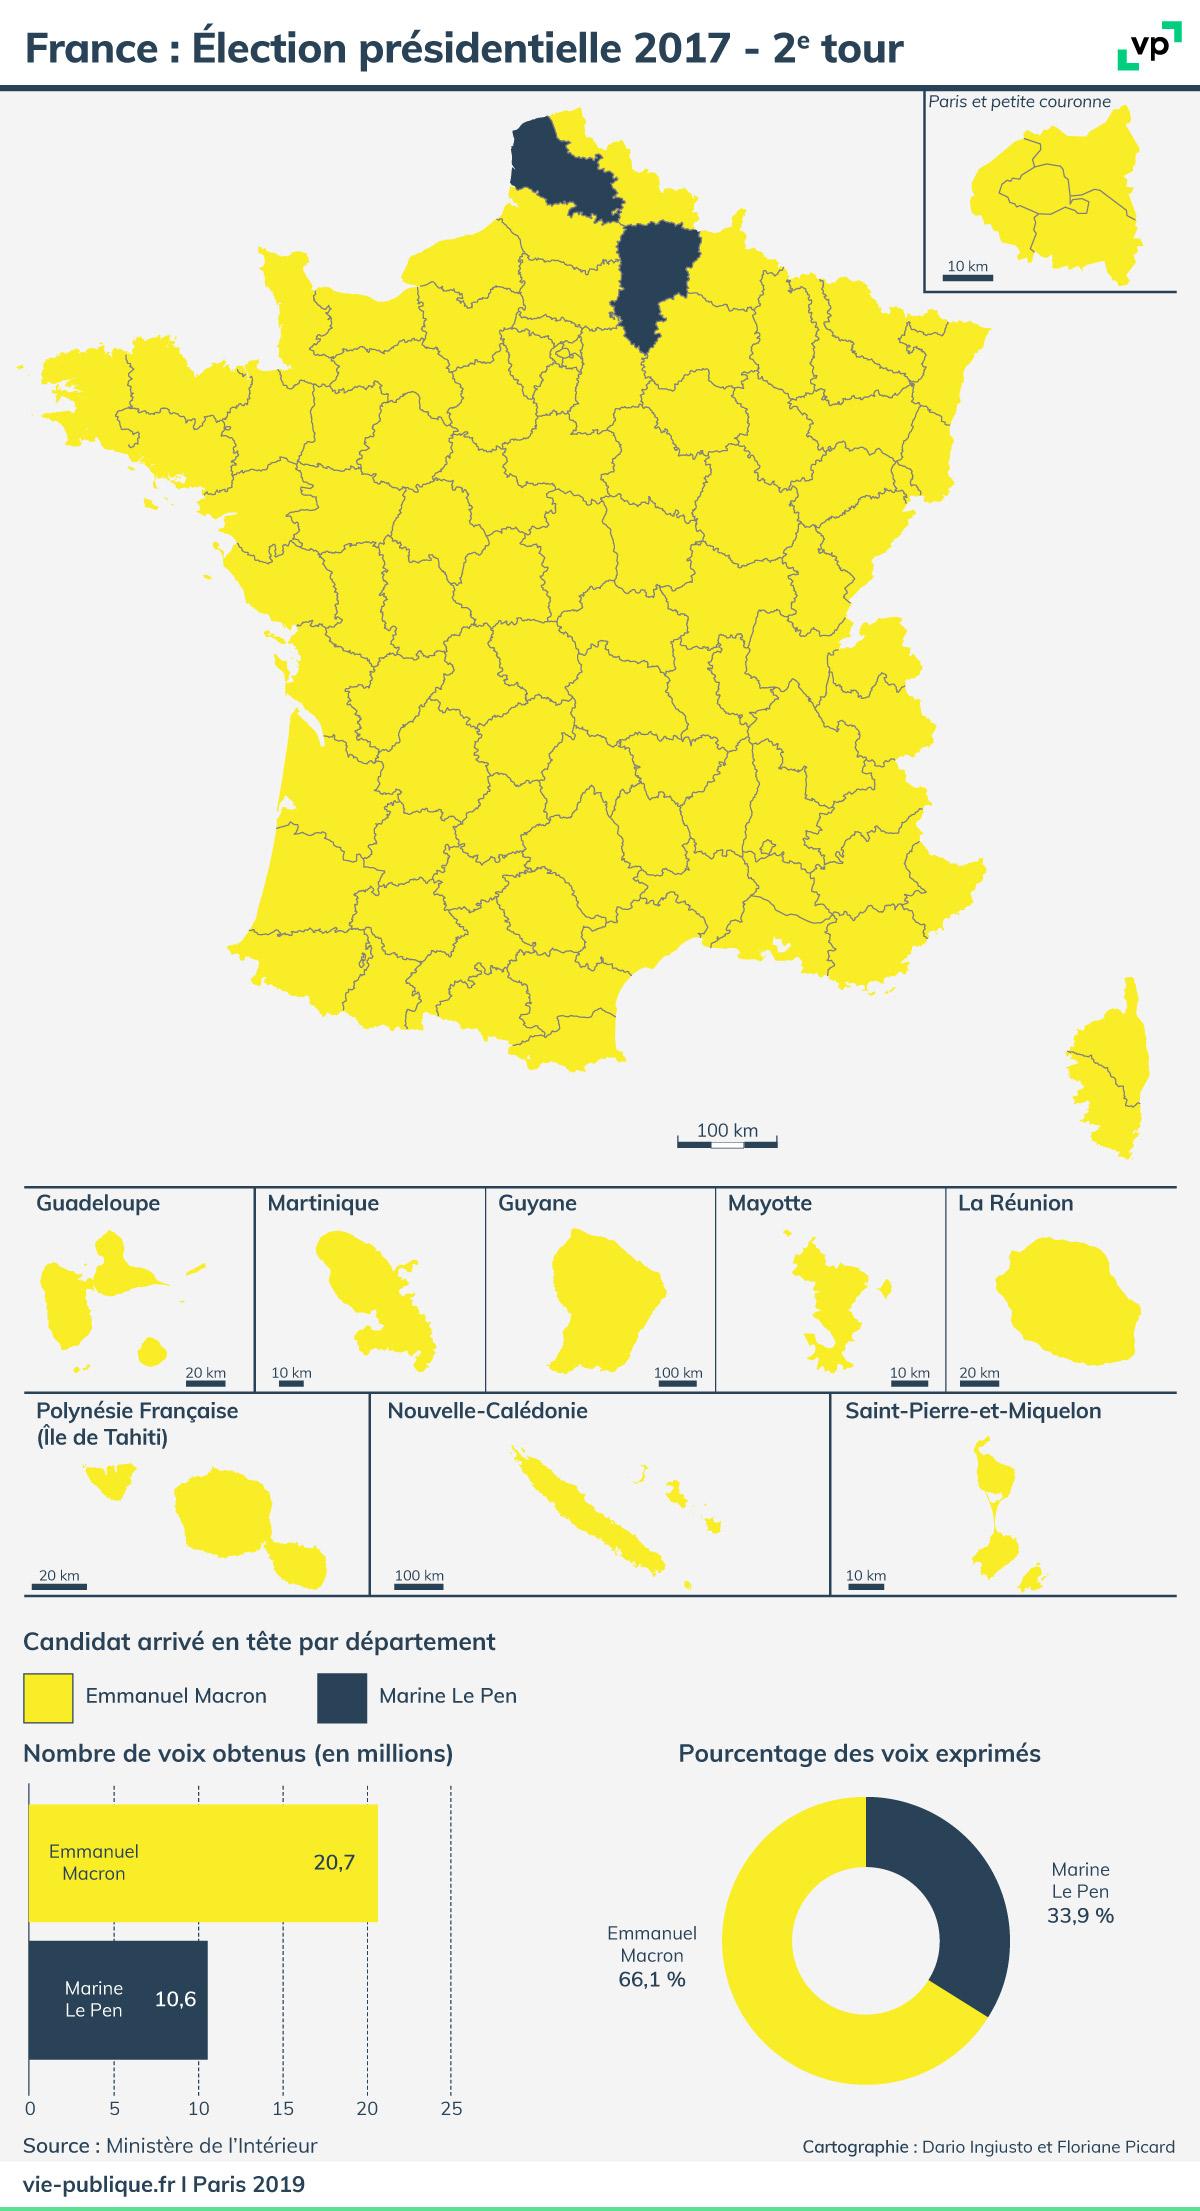 Carte de France : Élection présidentielle 2017 - deuxième tour. Description de la carte ci-dessous 